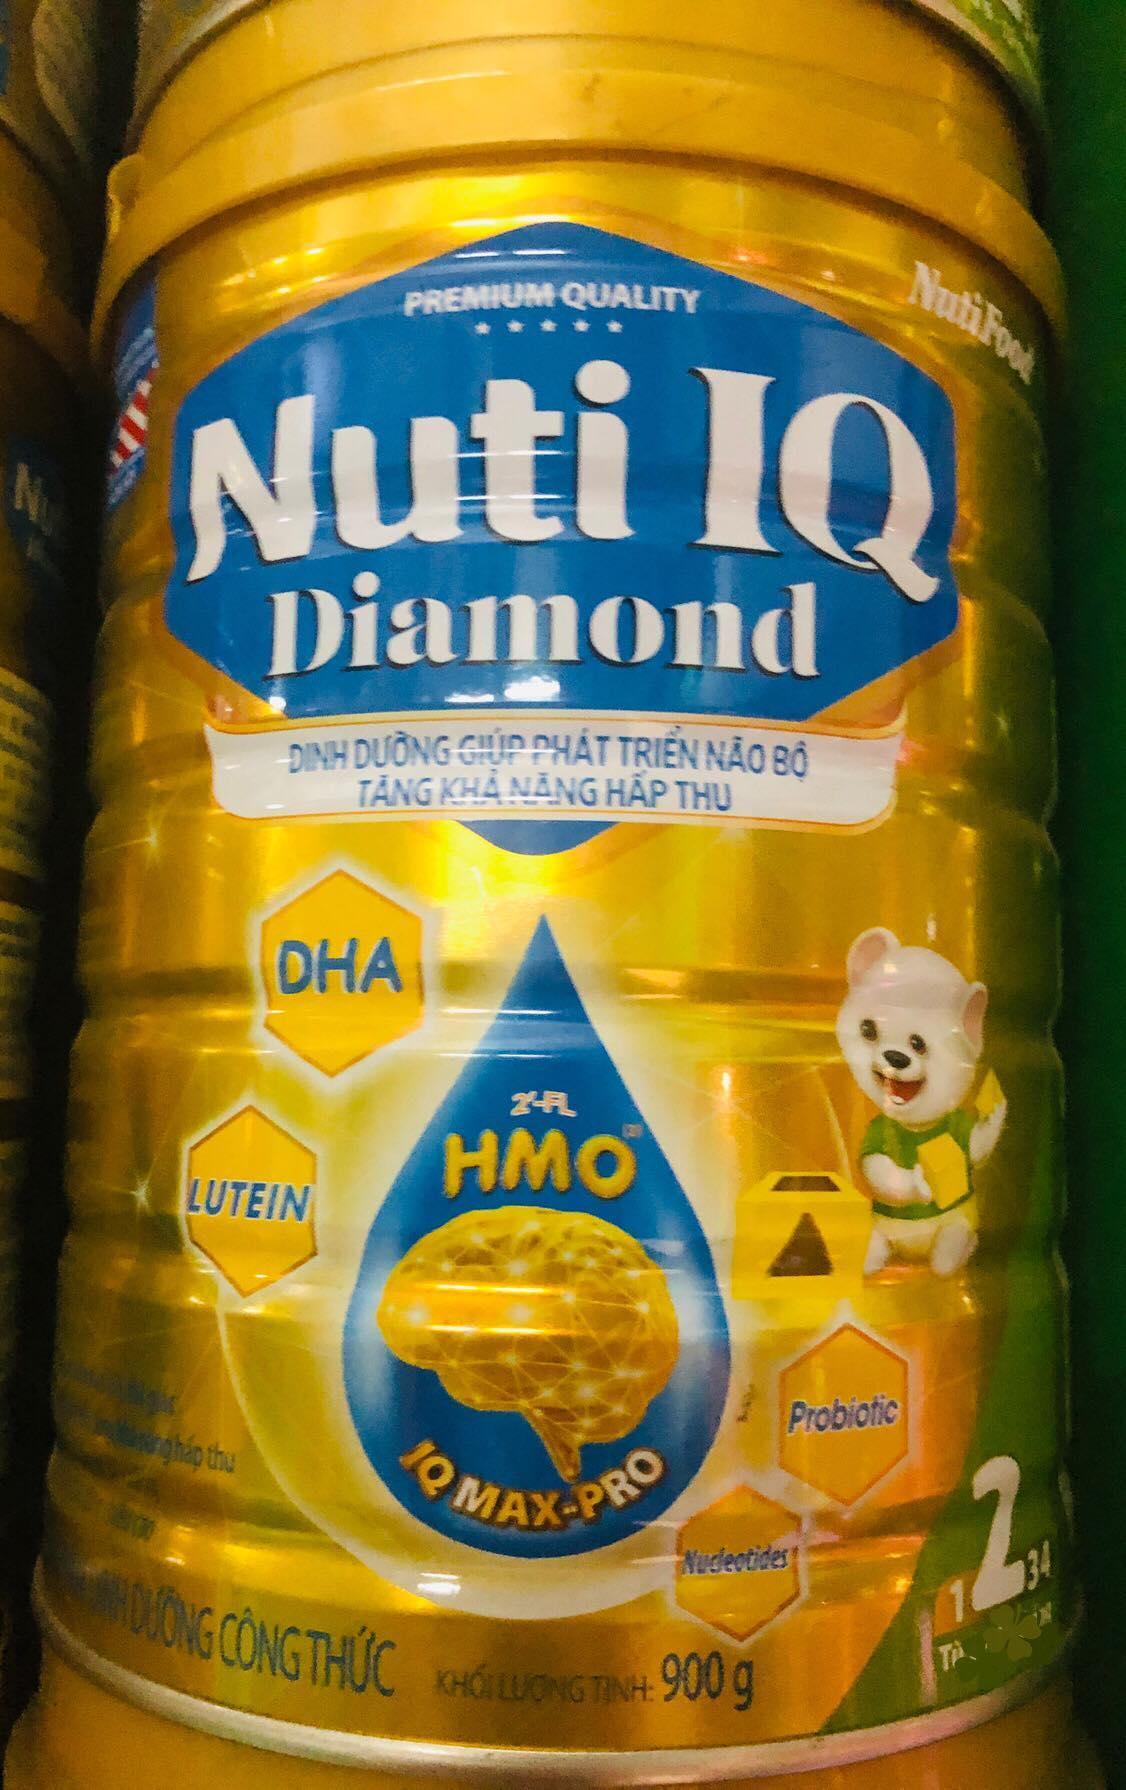 Sữa bột Nutifood Nuti IQ Step 2 - hộp 900g (dành cho trẻ từ 6 - 12 tháng)